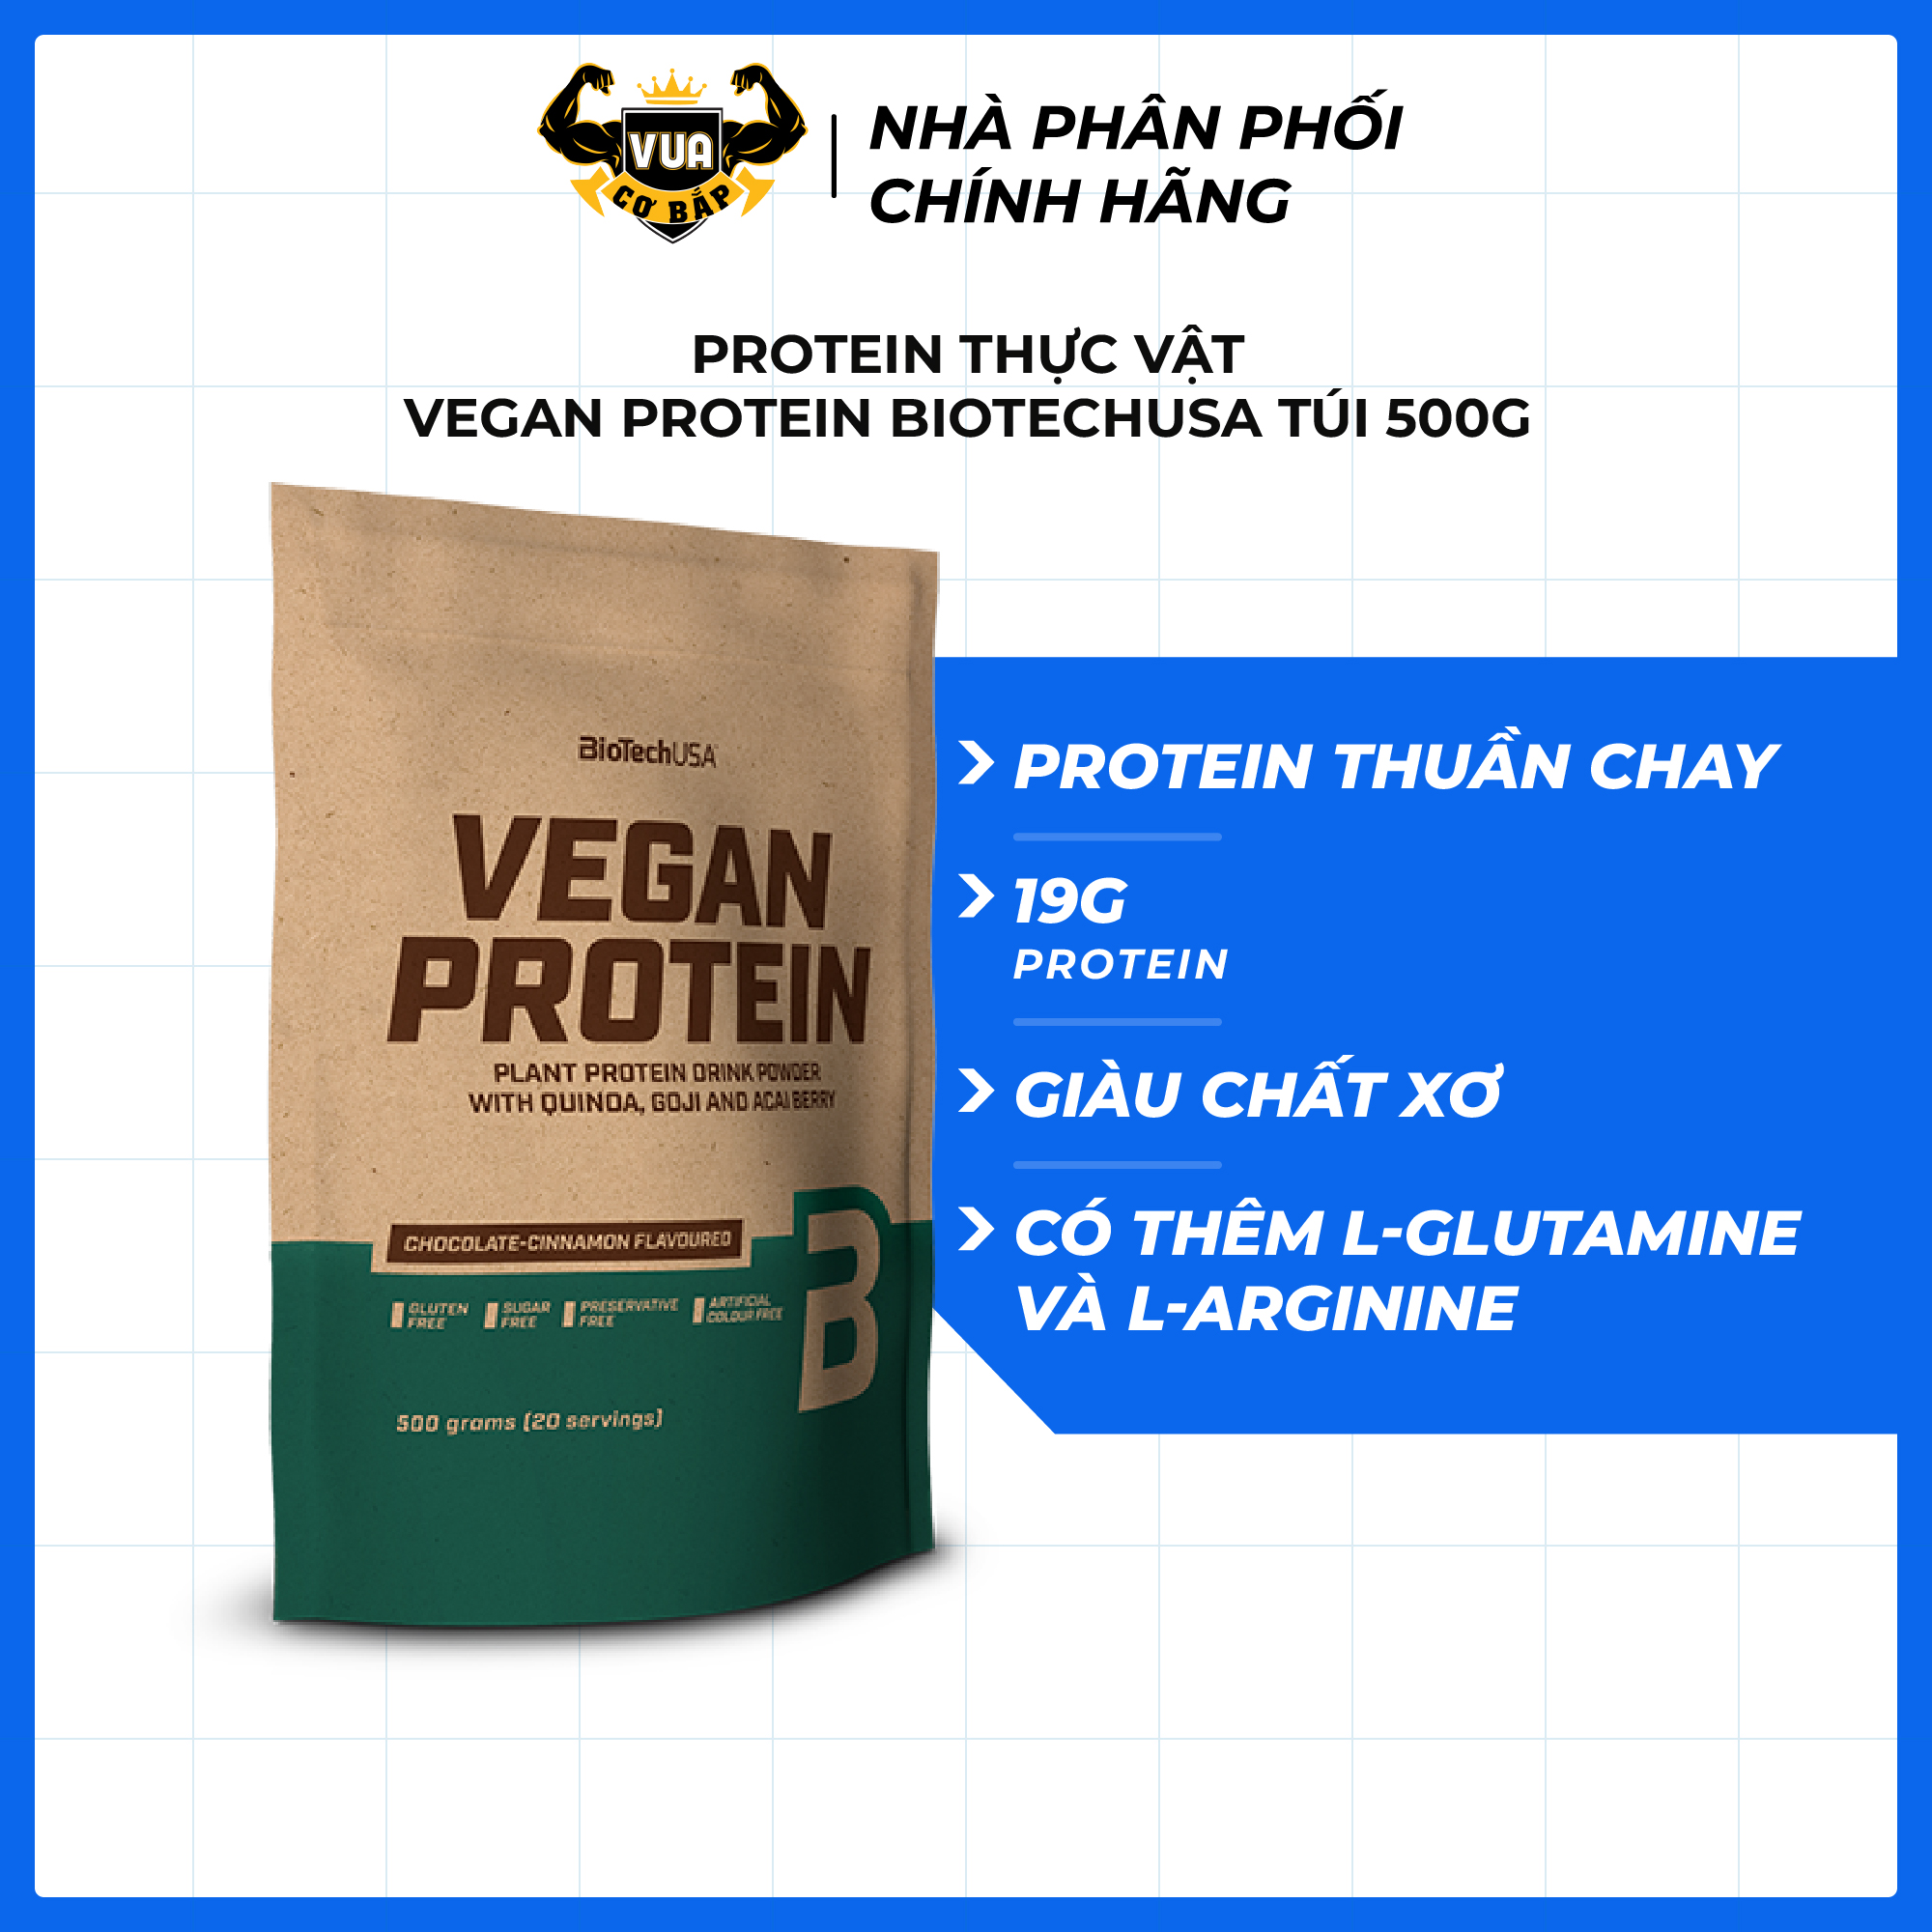 Protein Thực Vật – Vegan Protein BiotechUSA Túi 500g